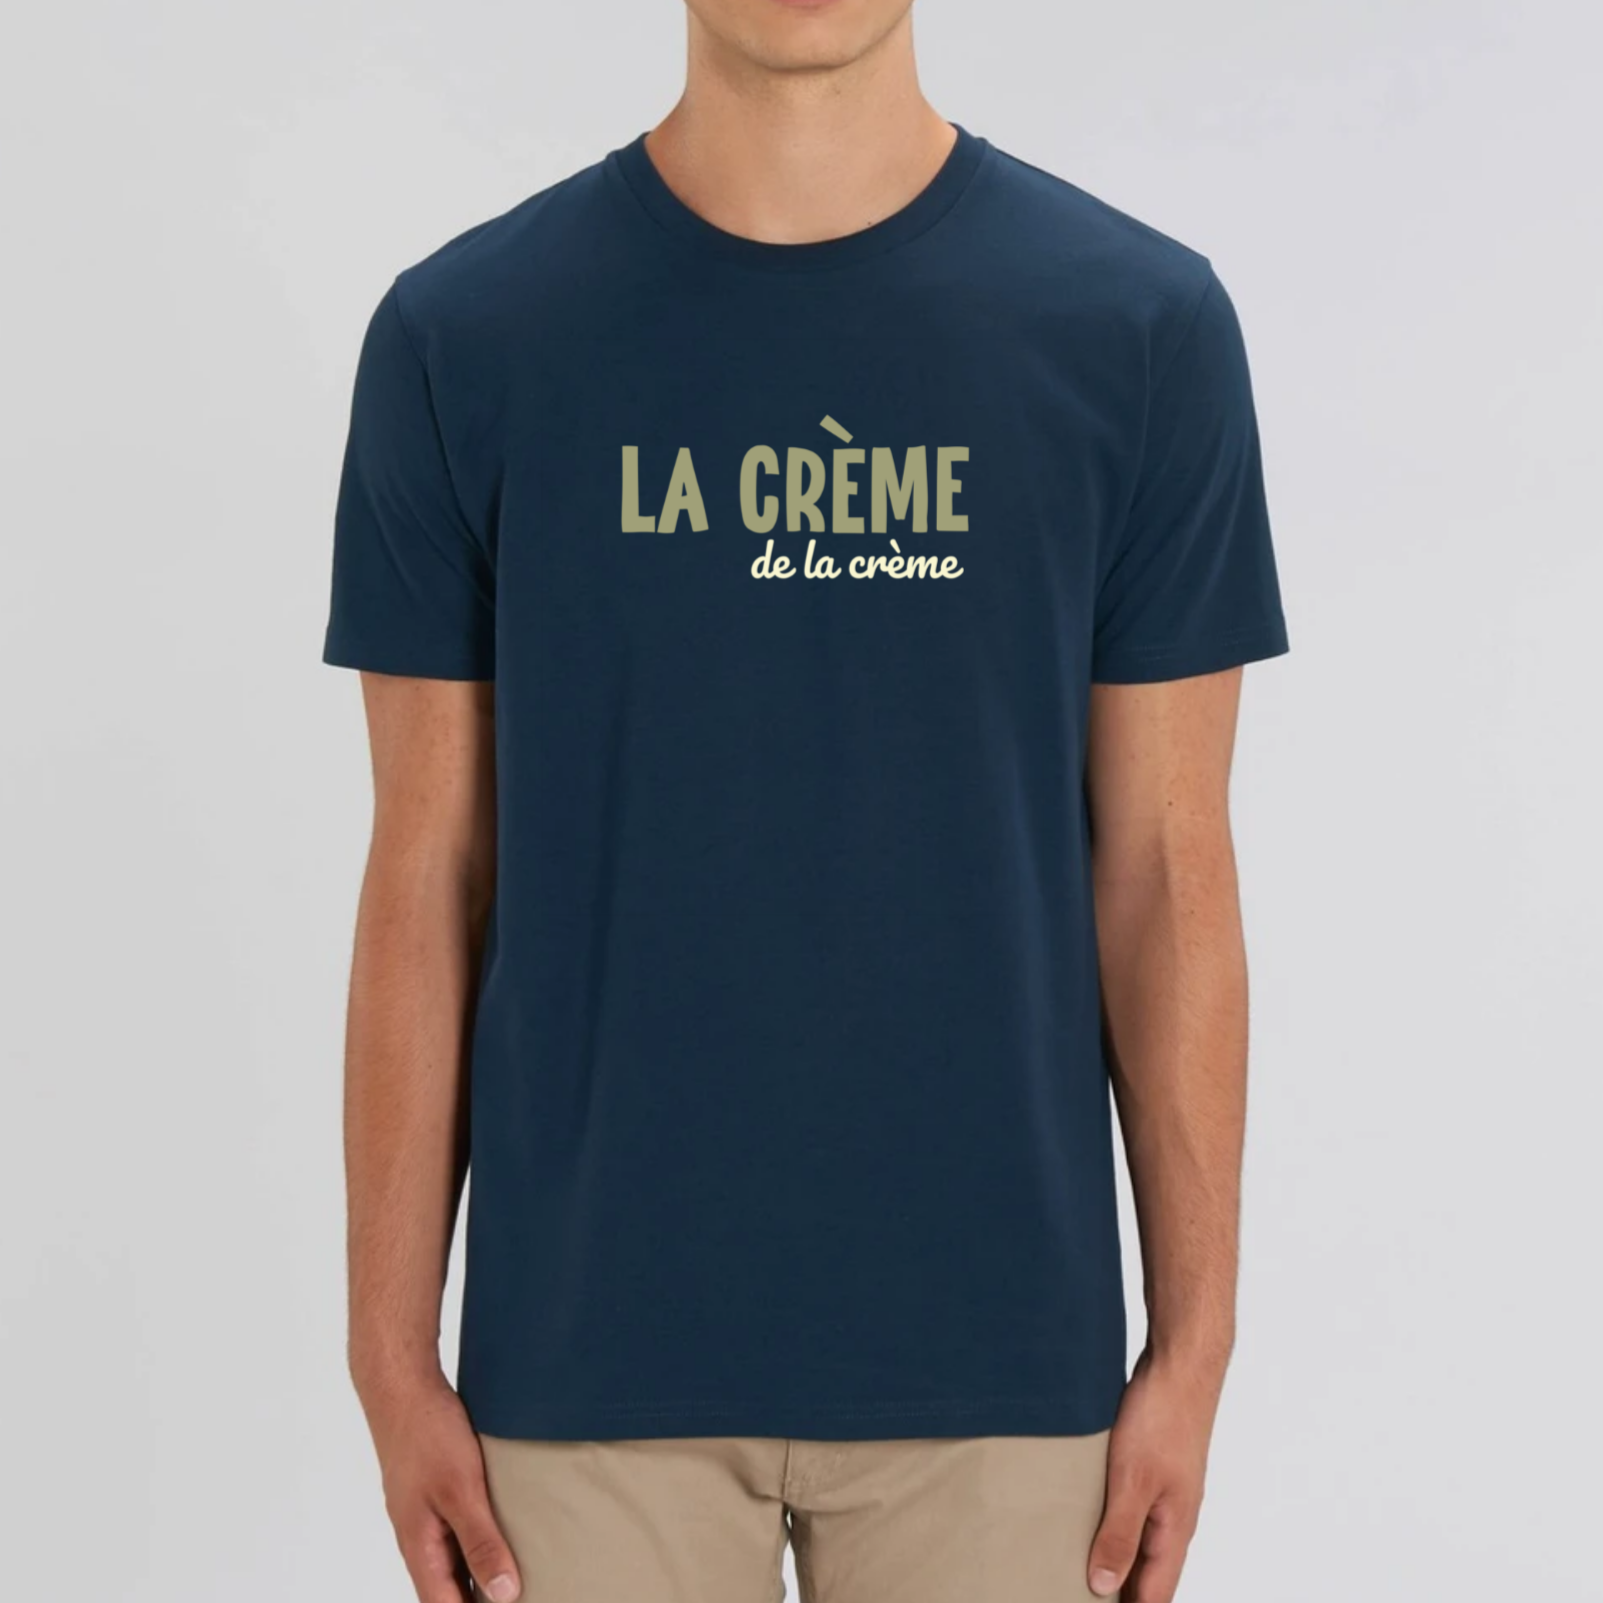 T-Shirt - "La crème de la crème"